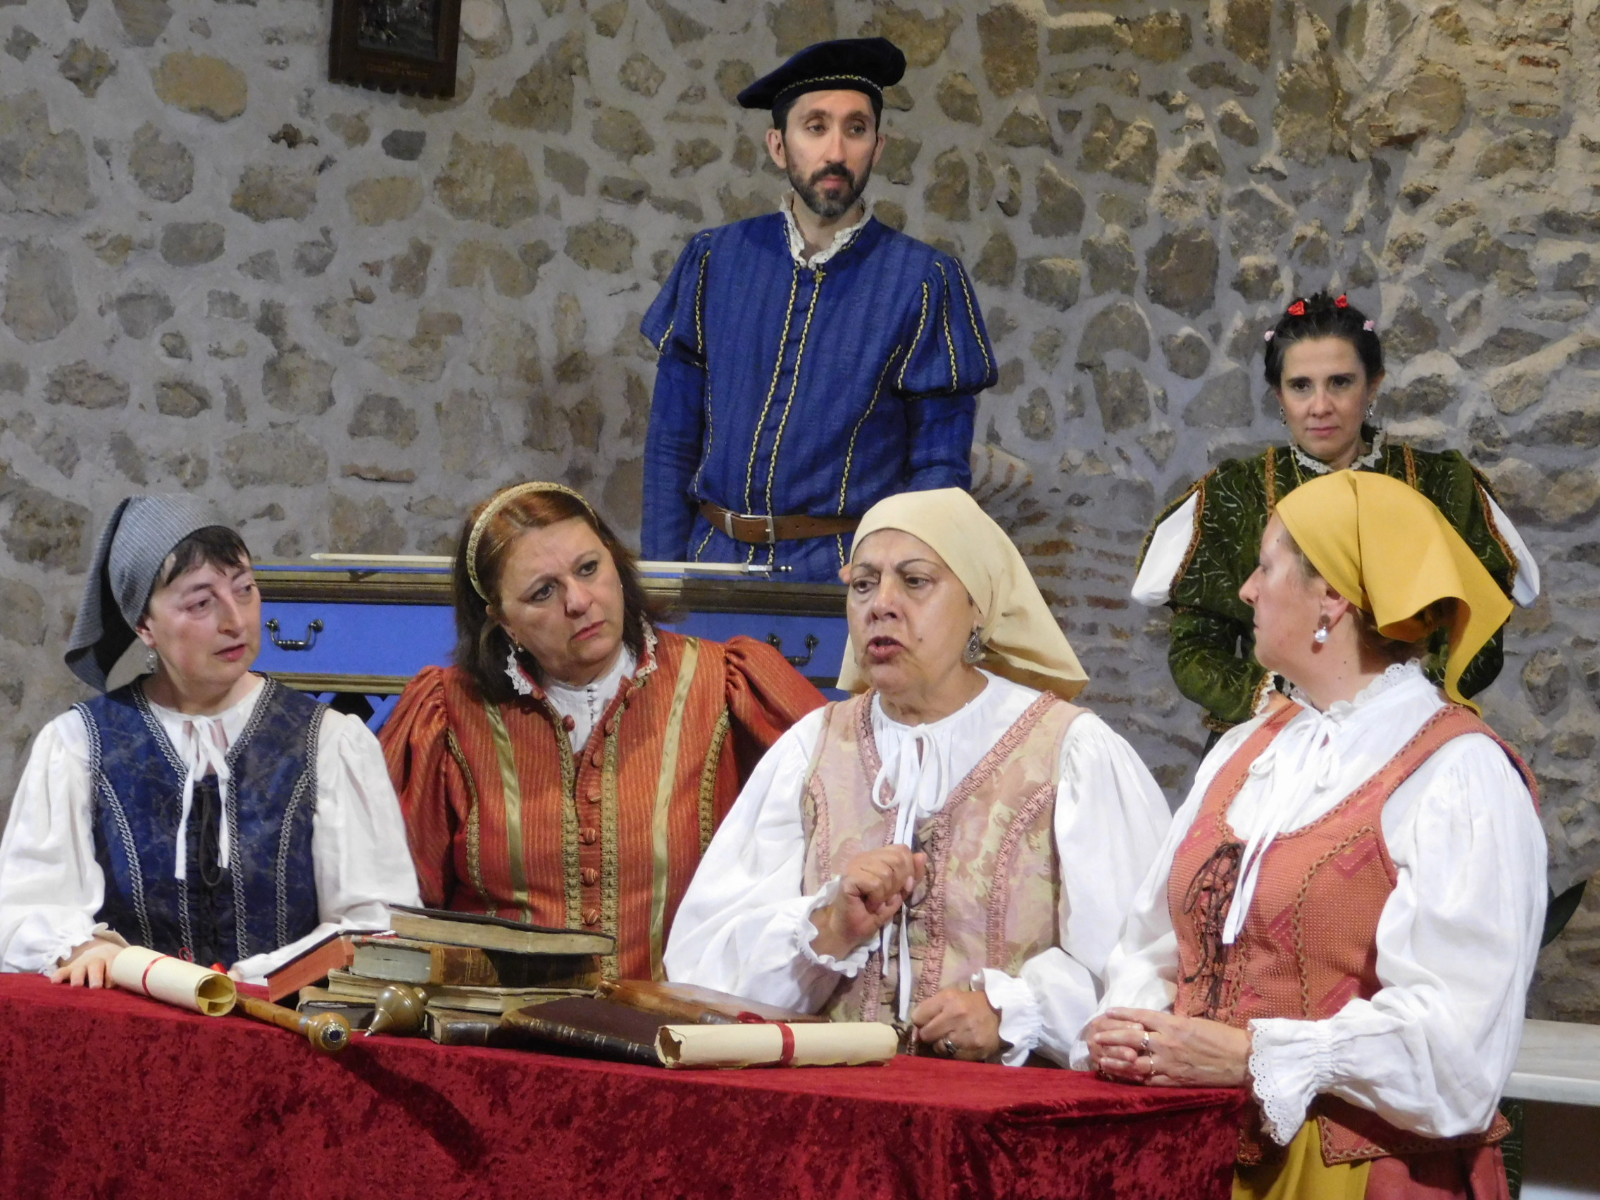 Cultura Teatral en Sieteiglesias de Tormes con la obra 'Buscando a Nebrija' de Denis Rafter